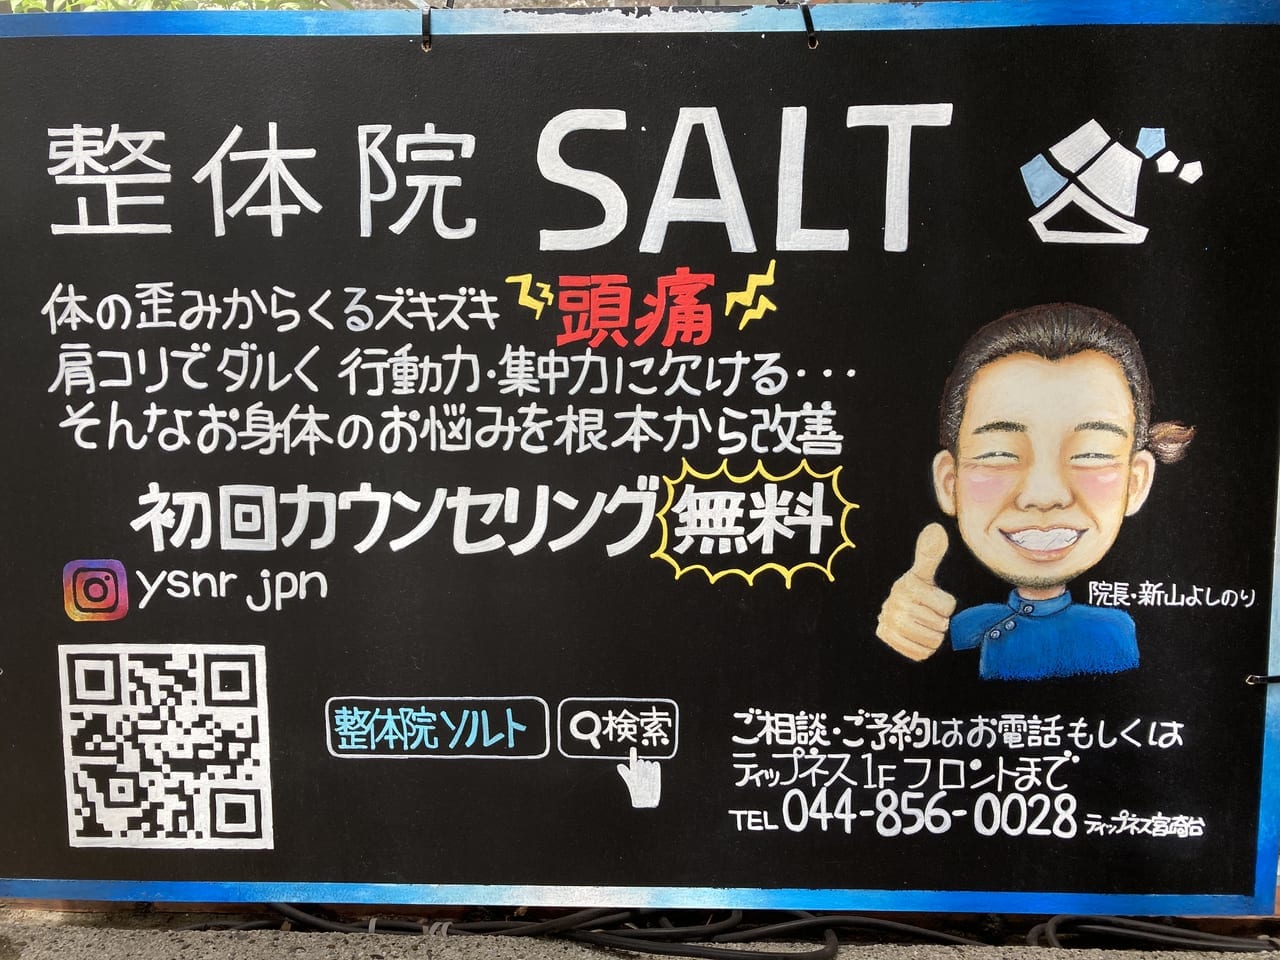 整体院SALTの紹介